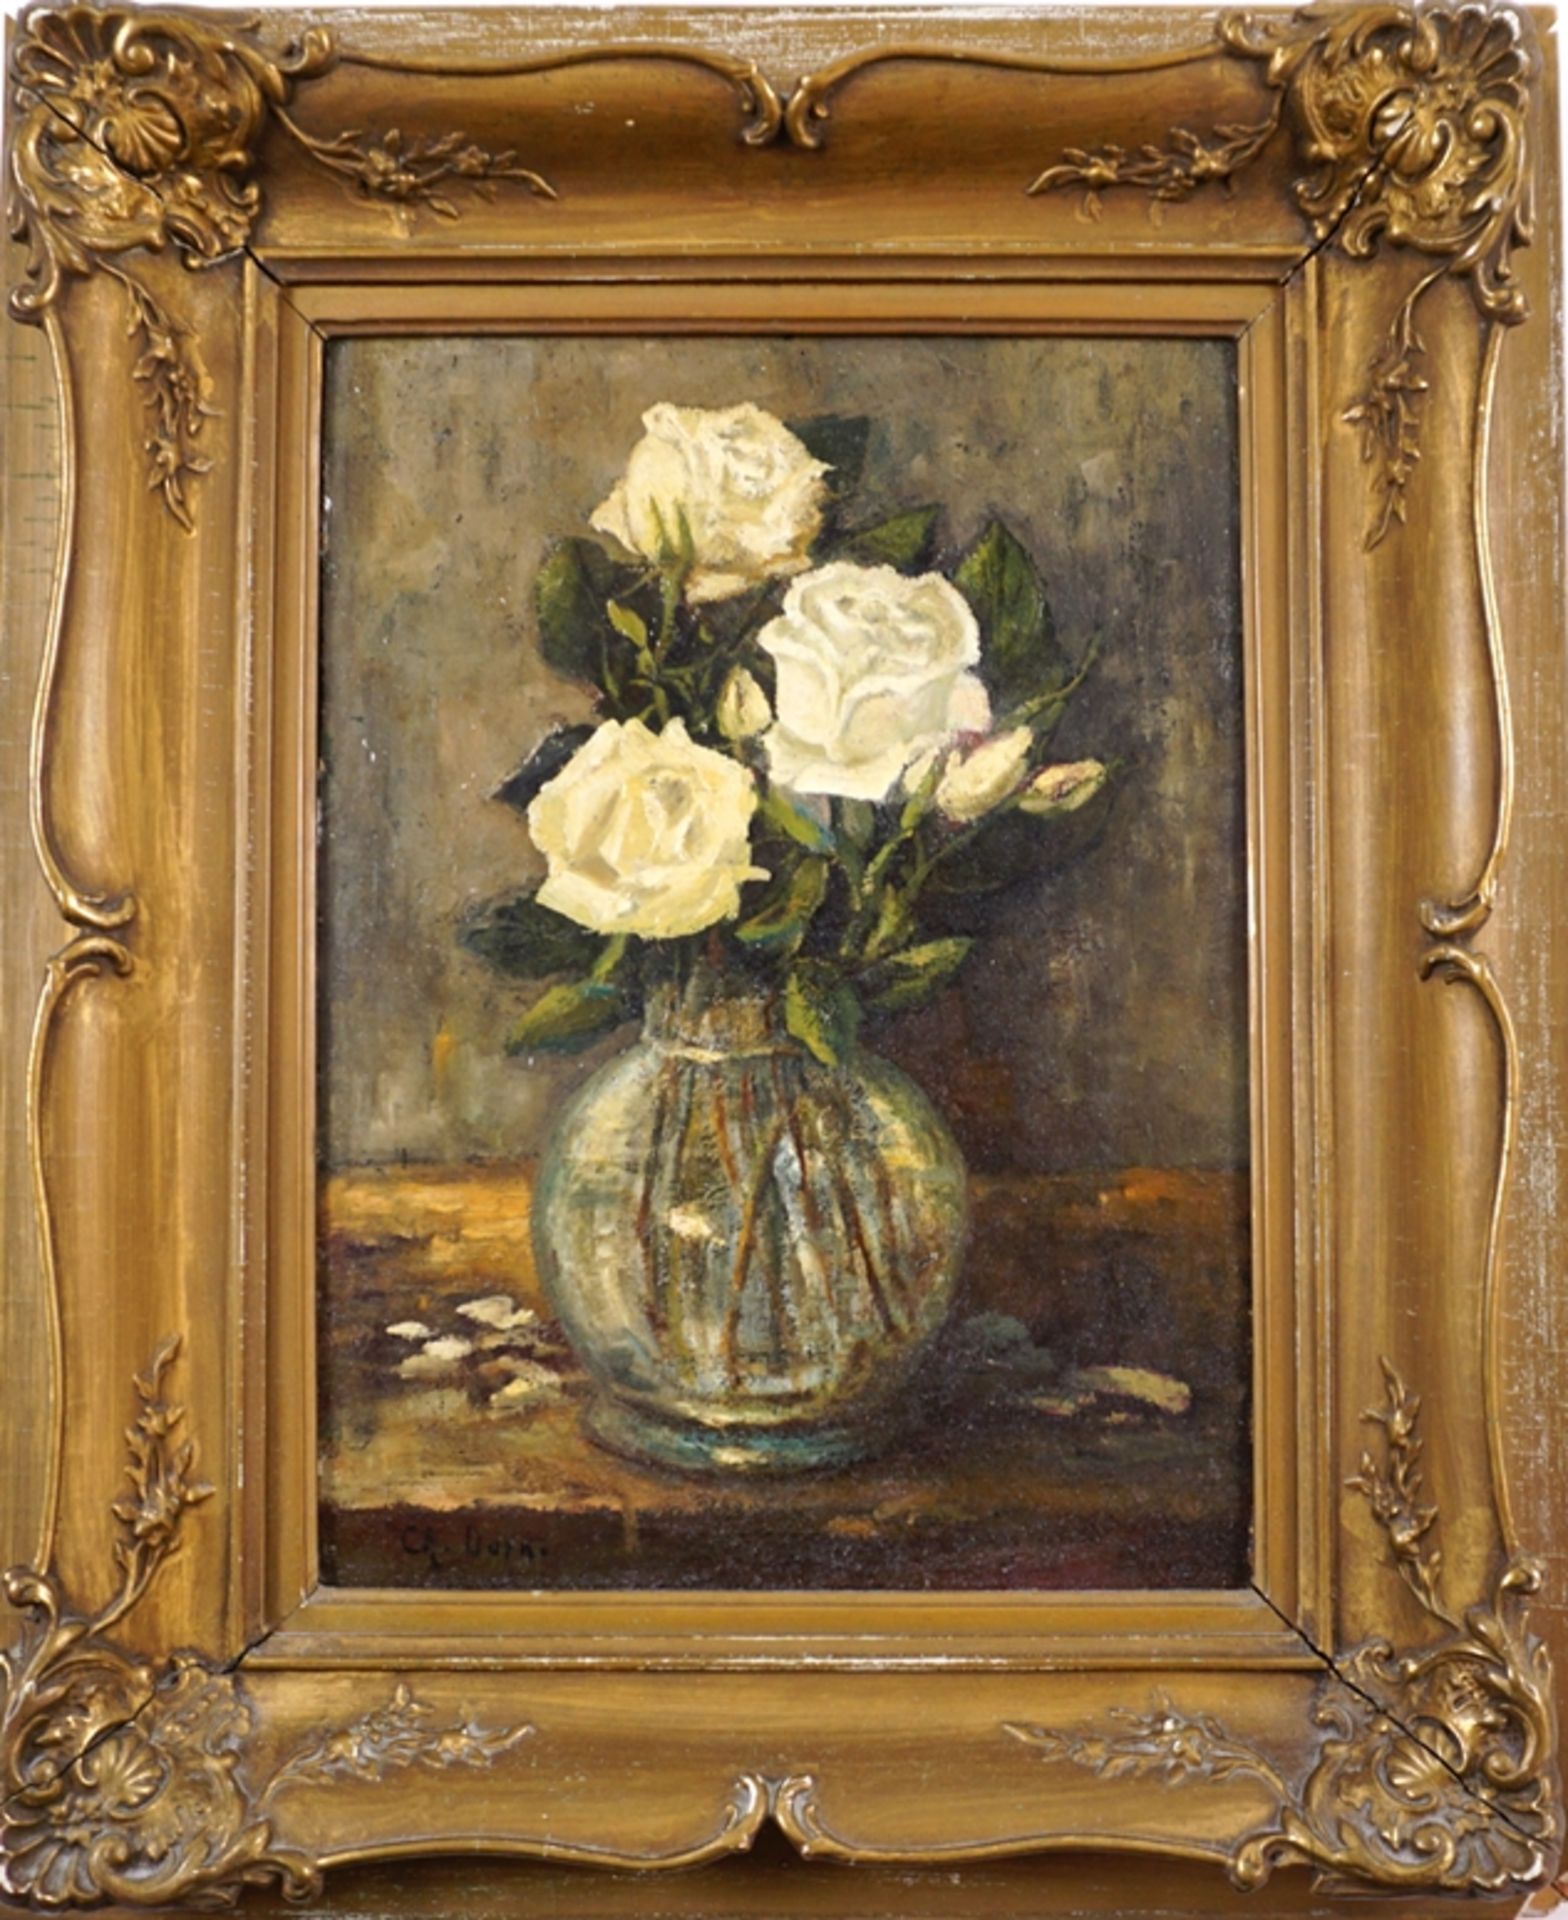 Christopher Dorner, "Stillleben mit weißen Rosen", 1921, Öl/Holz